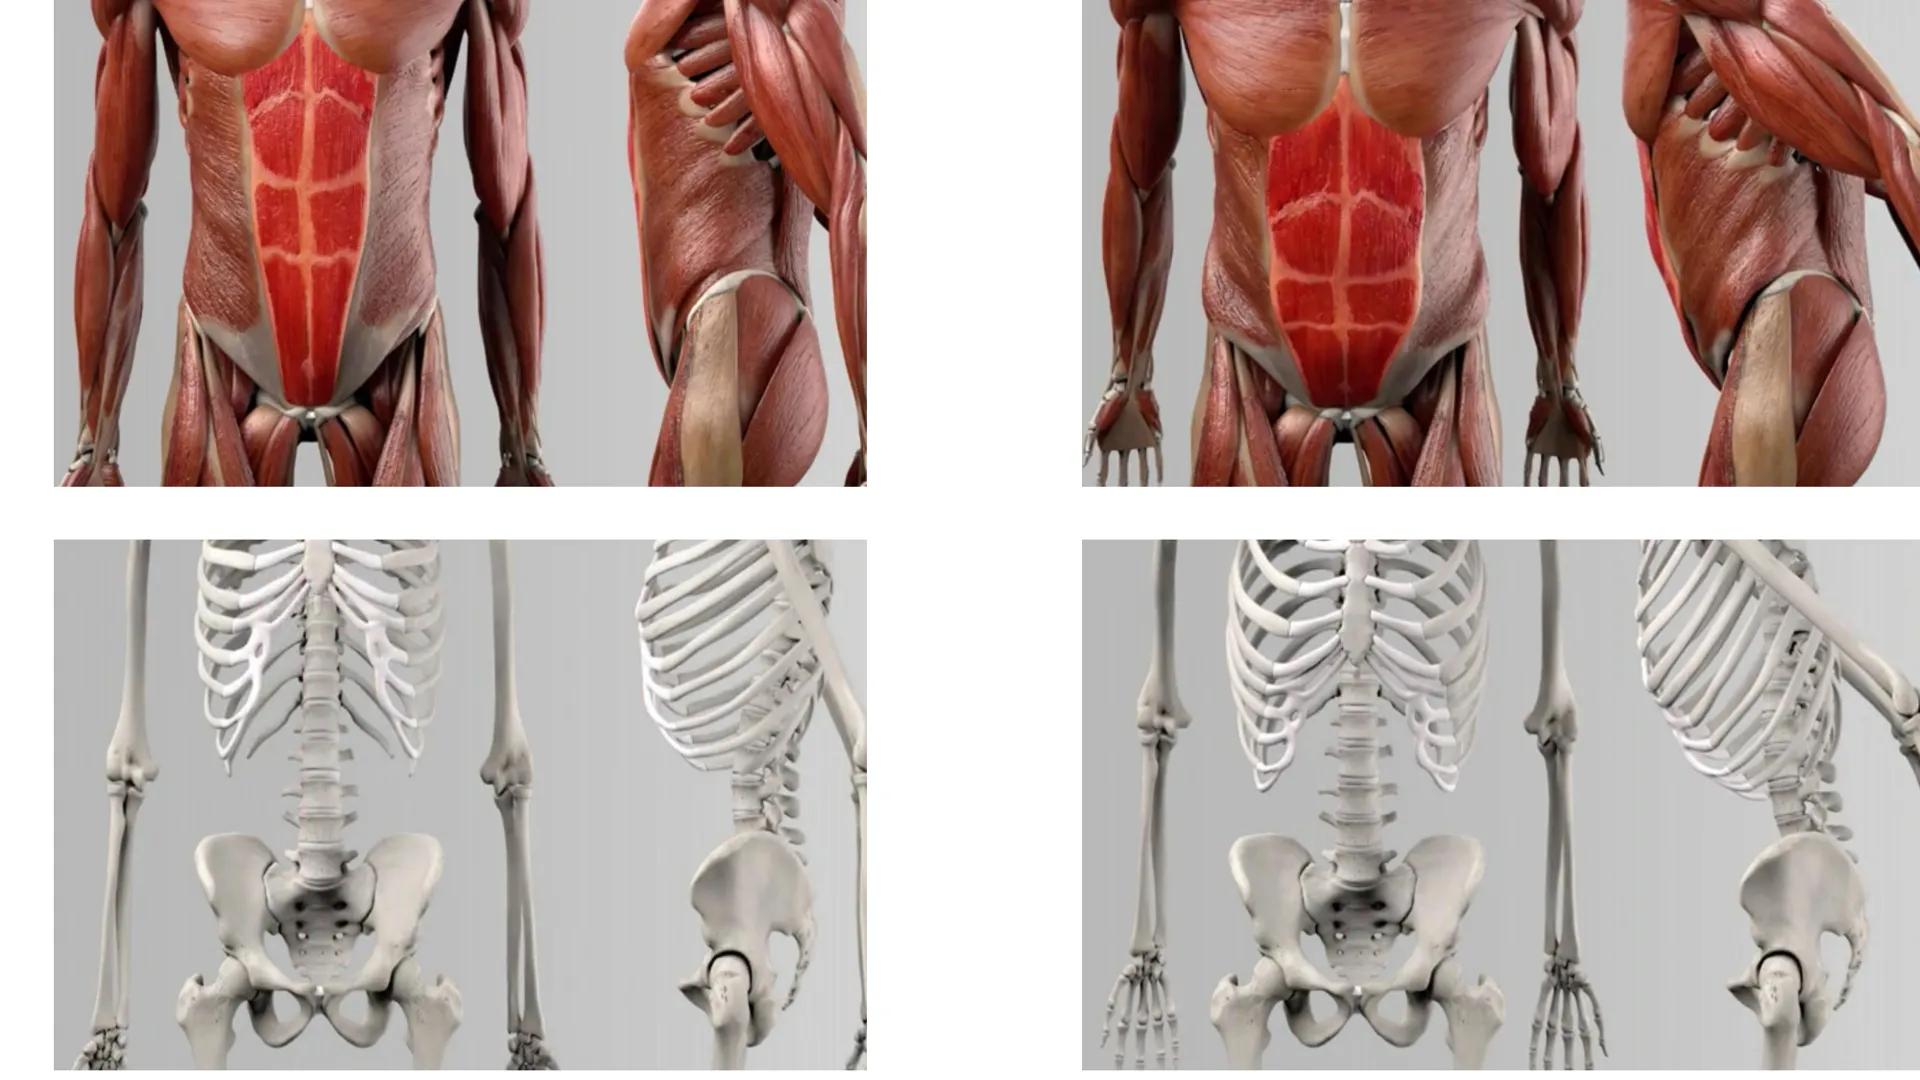 Bauchmuskulatur
Präsentation von Antonia, Emily & Kaya Inhaltsverzeichnis
1. Welche Bauchmuskeln gibt es ? (Antonia)
2. Anatomie (Kaya)
3. A